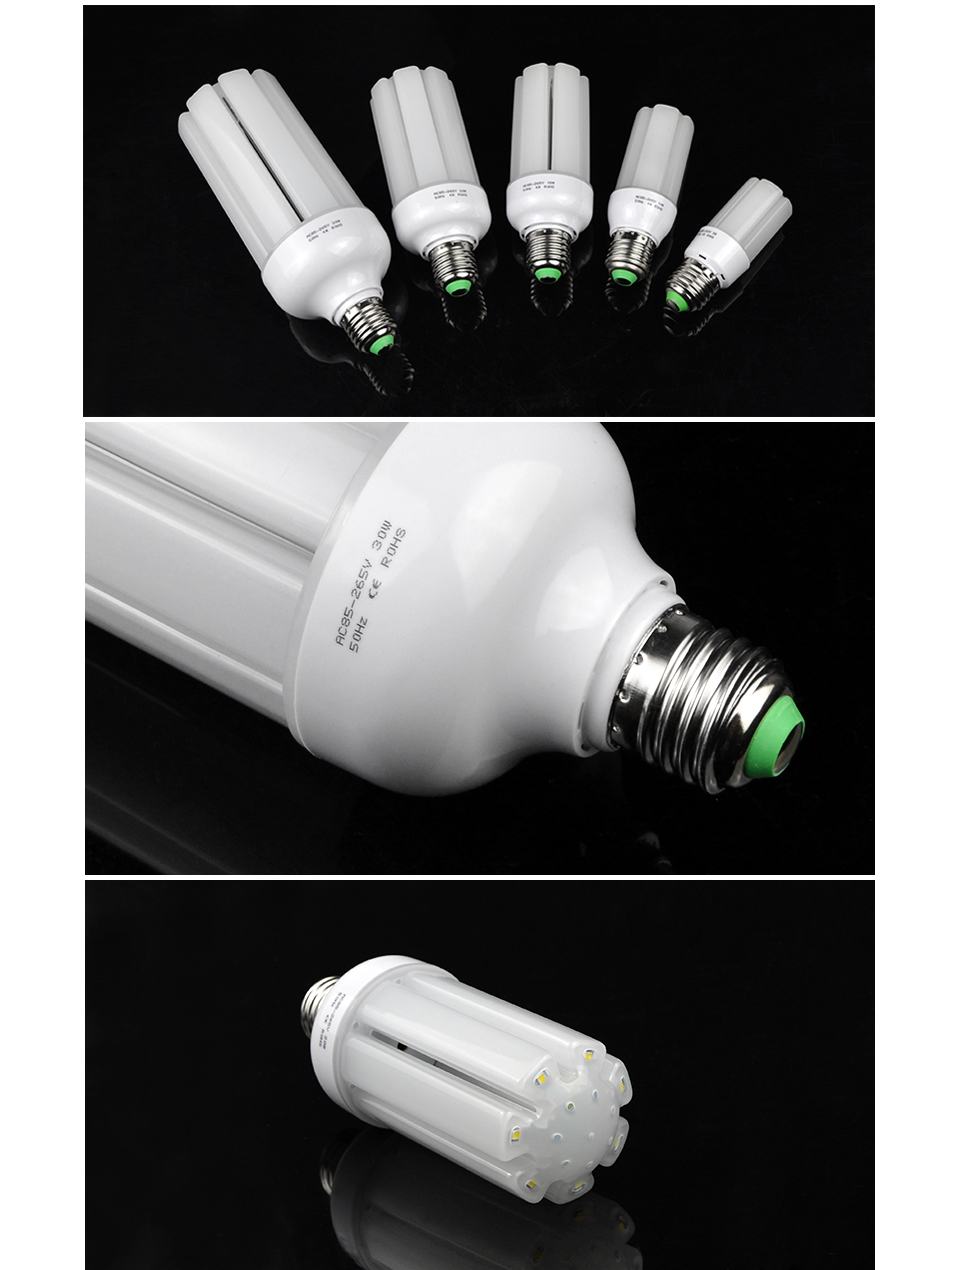 E27 Infrared Induction light Switch lamp base holder 110V 220V PIR Motion Sensor Light spot light LED Bulb 5W 10W 15W 20W 30W